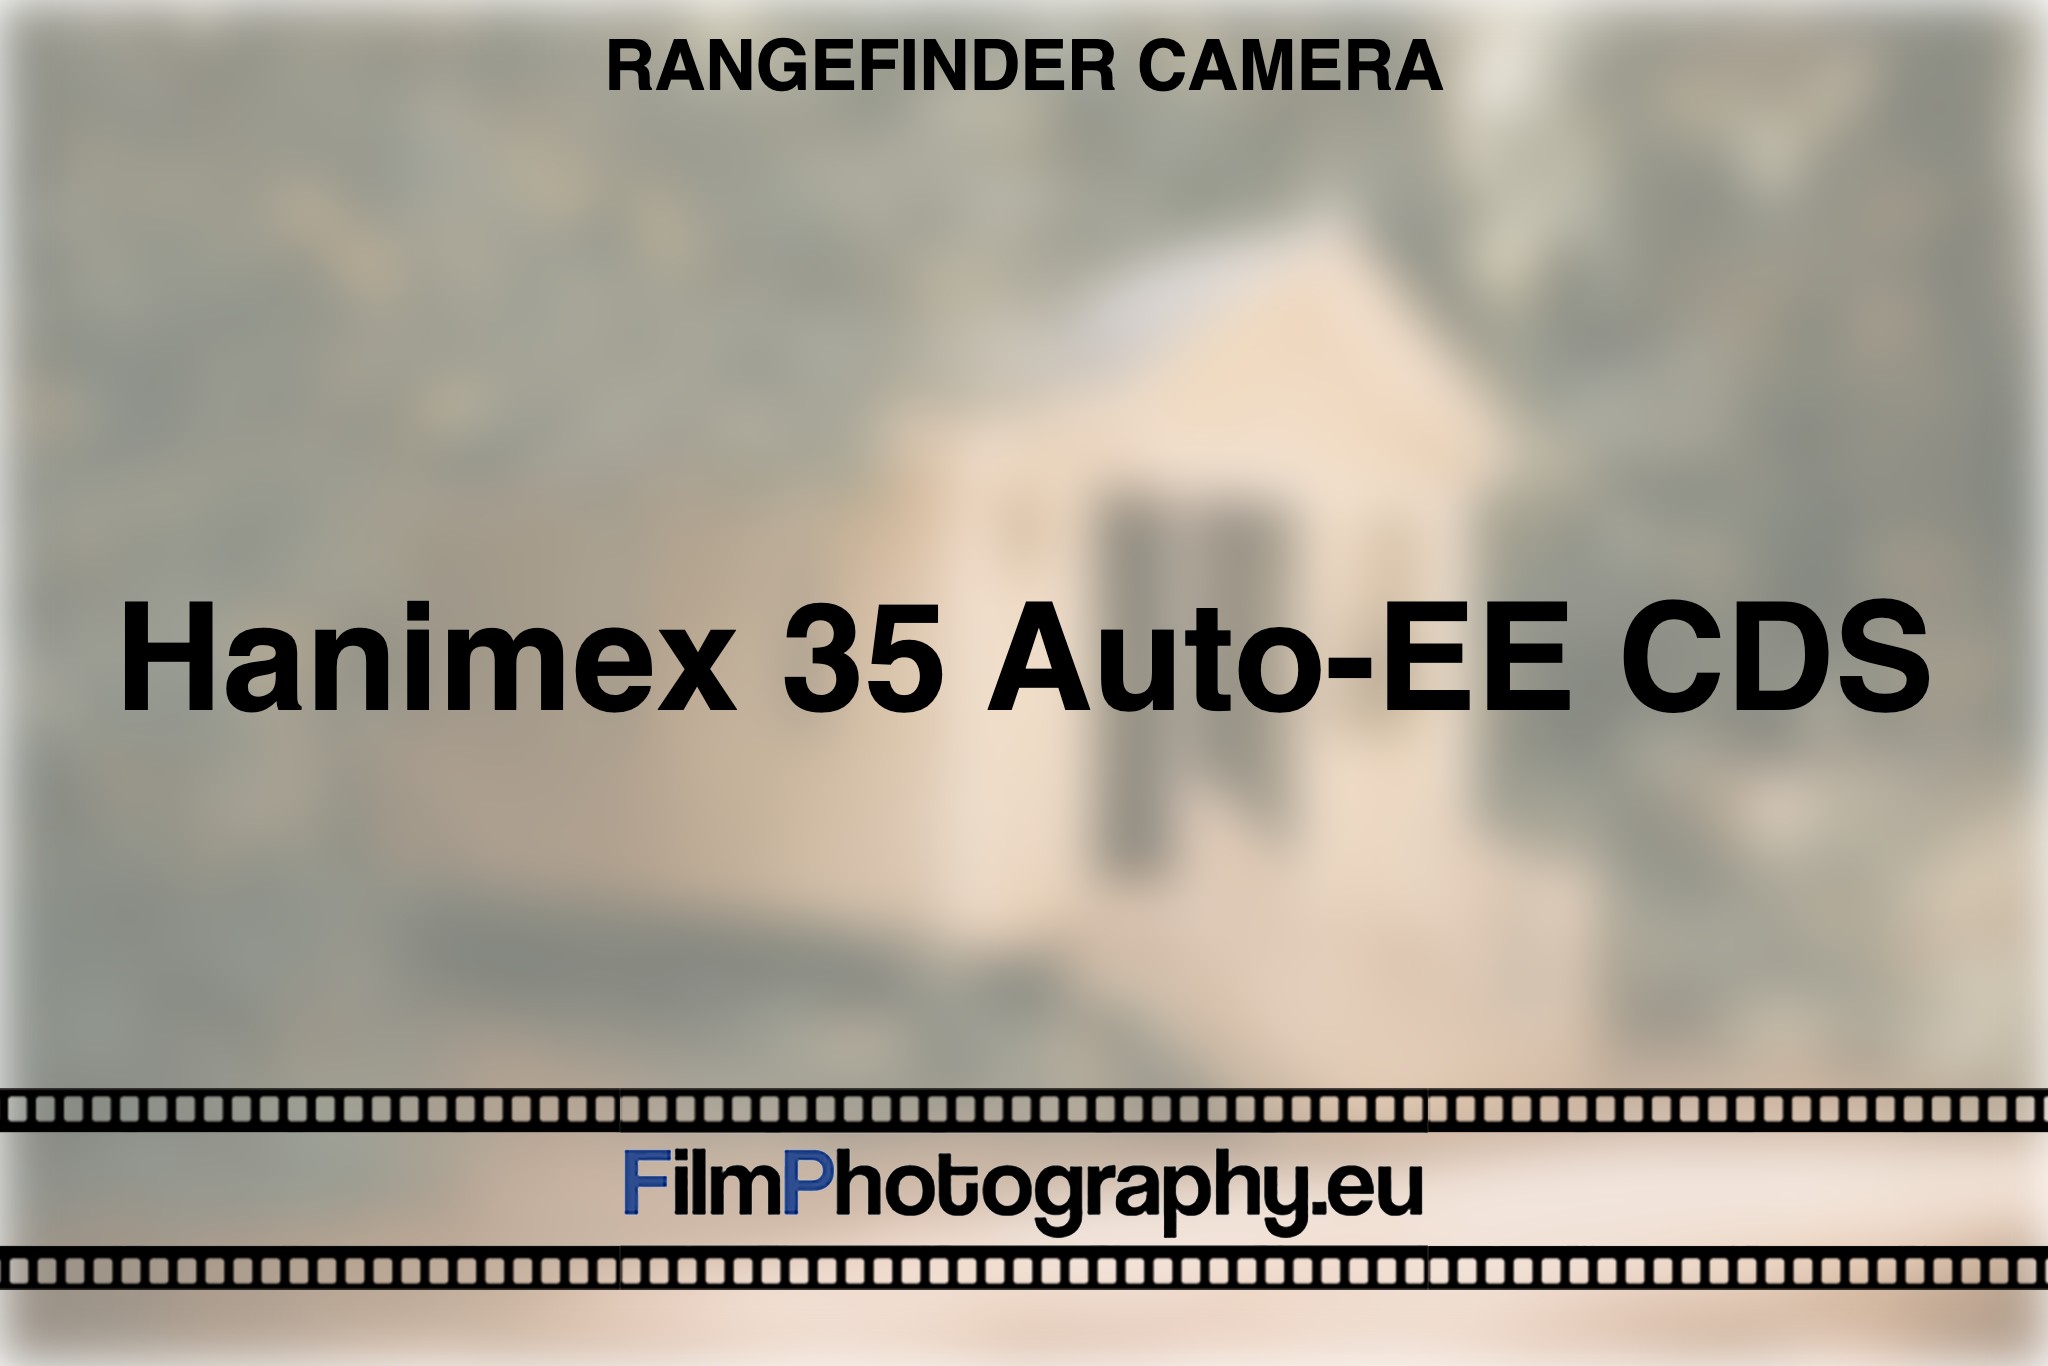 hanimex-35-auto-ee-cds-rangefinder-camera-bnv